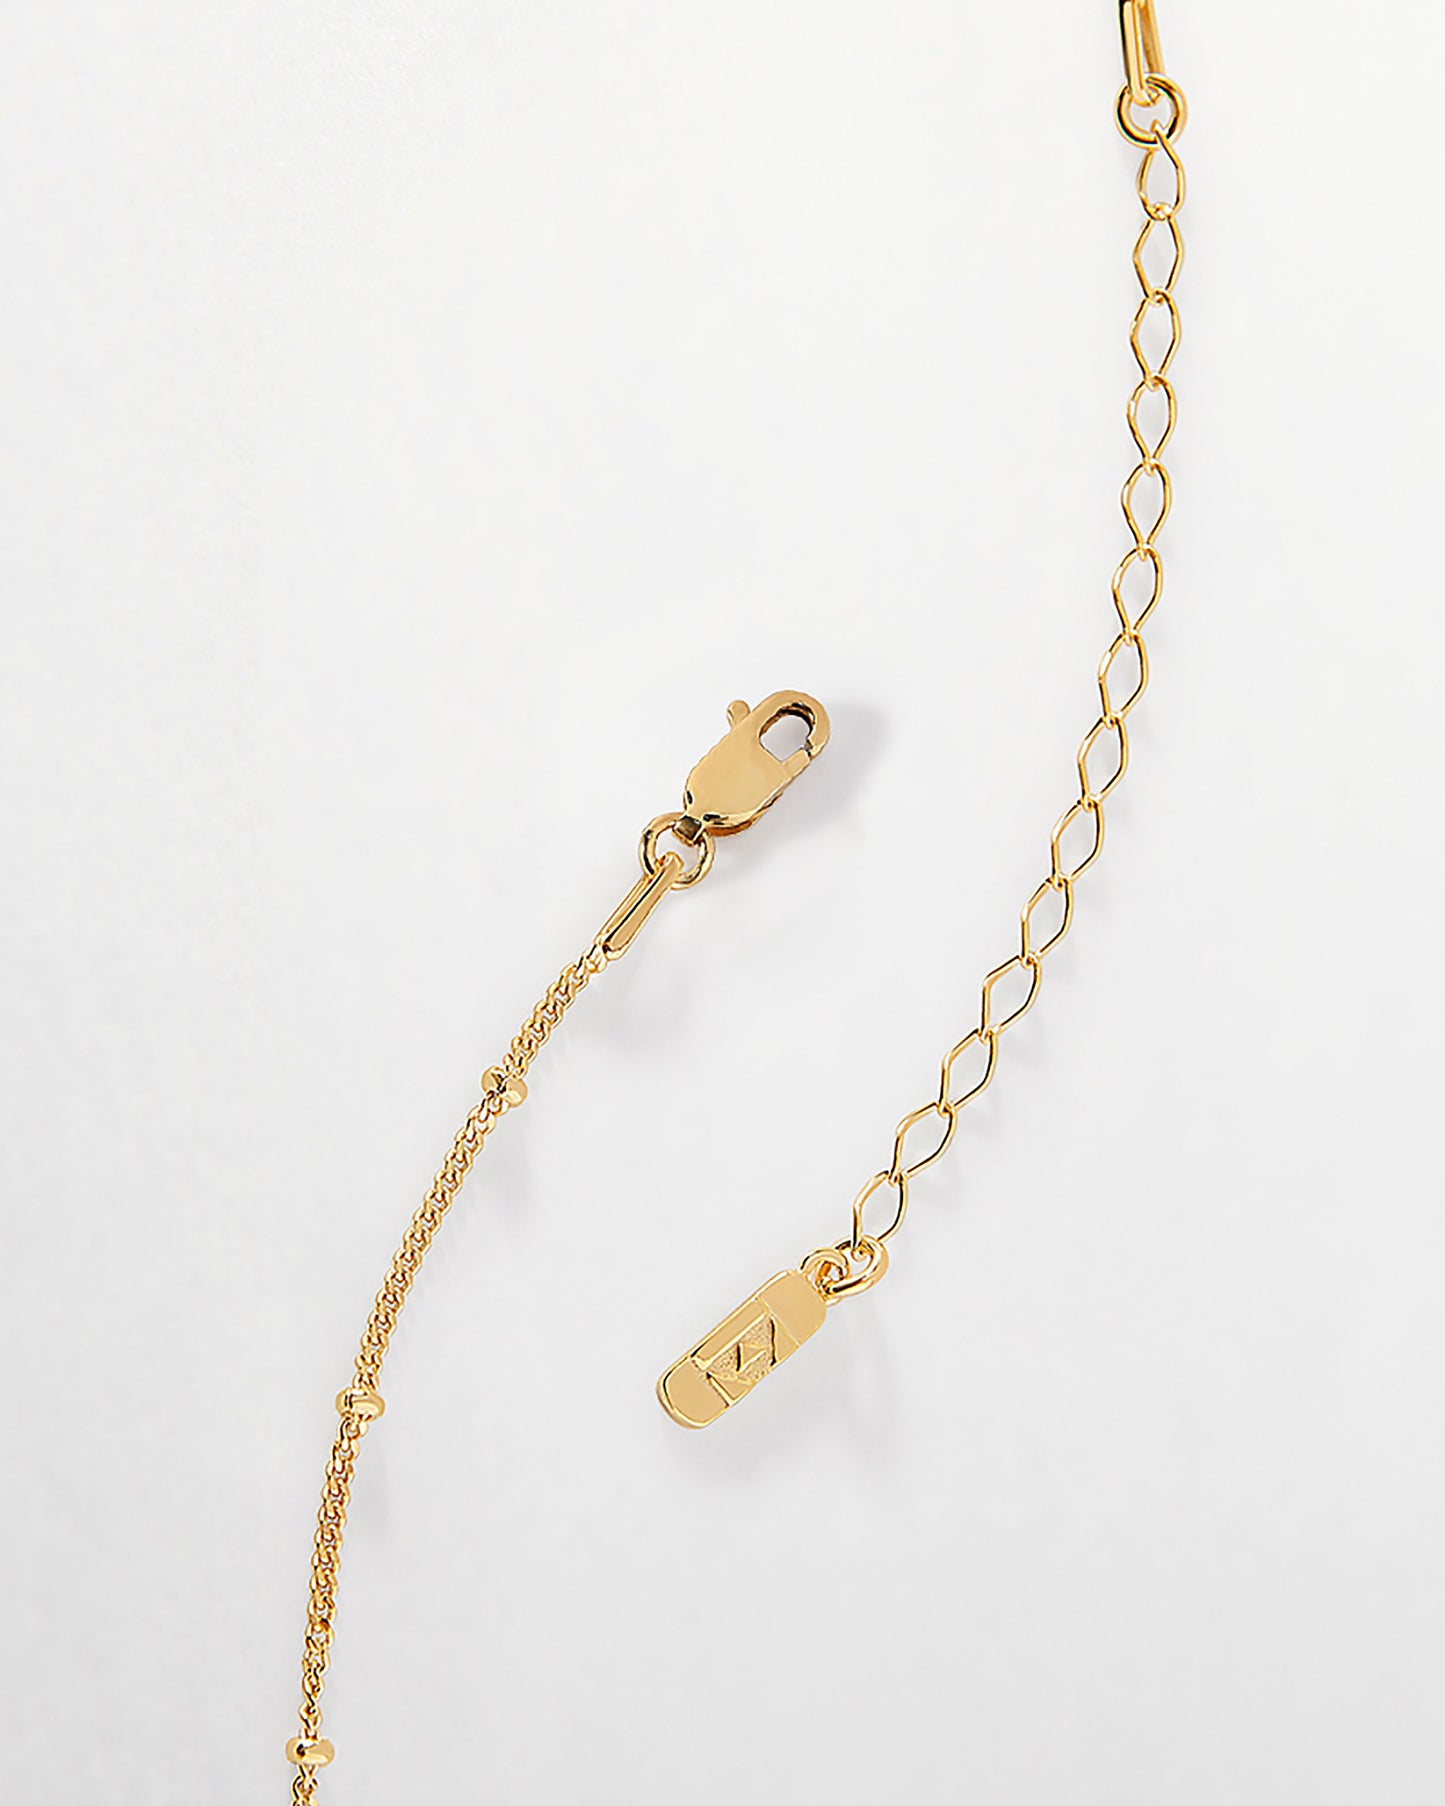 Victoria Cosmos Necklace - Gold